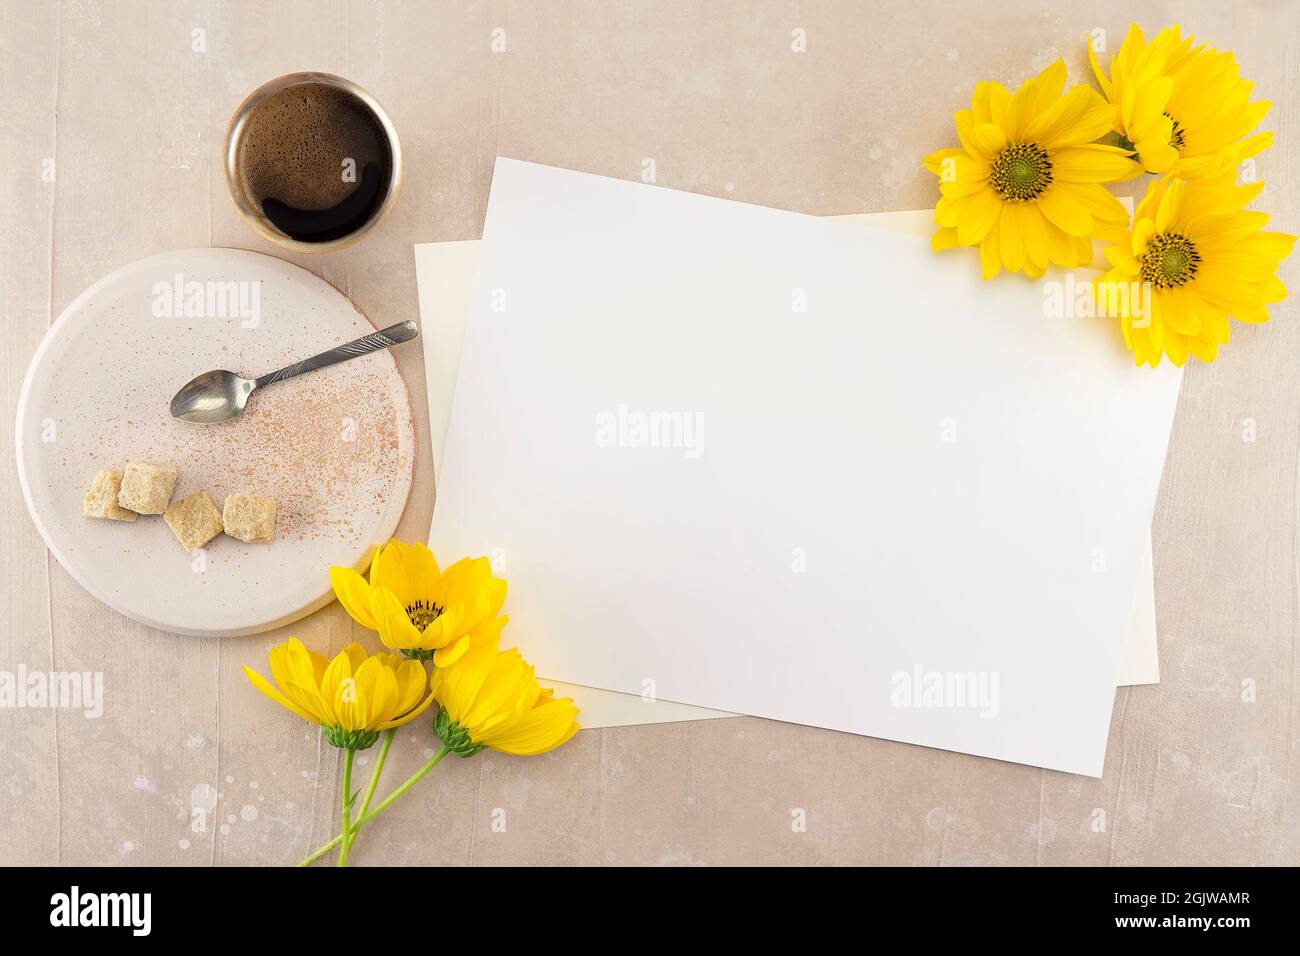 Leere weiße Hochzeit oder Grußkarte Mockup auf rosa vintage Tisch Hintergrund, Web-Banner für Design mit großen gelben Blumen, Tasse Kaffee, Teller mit Stockfoto